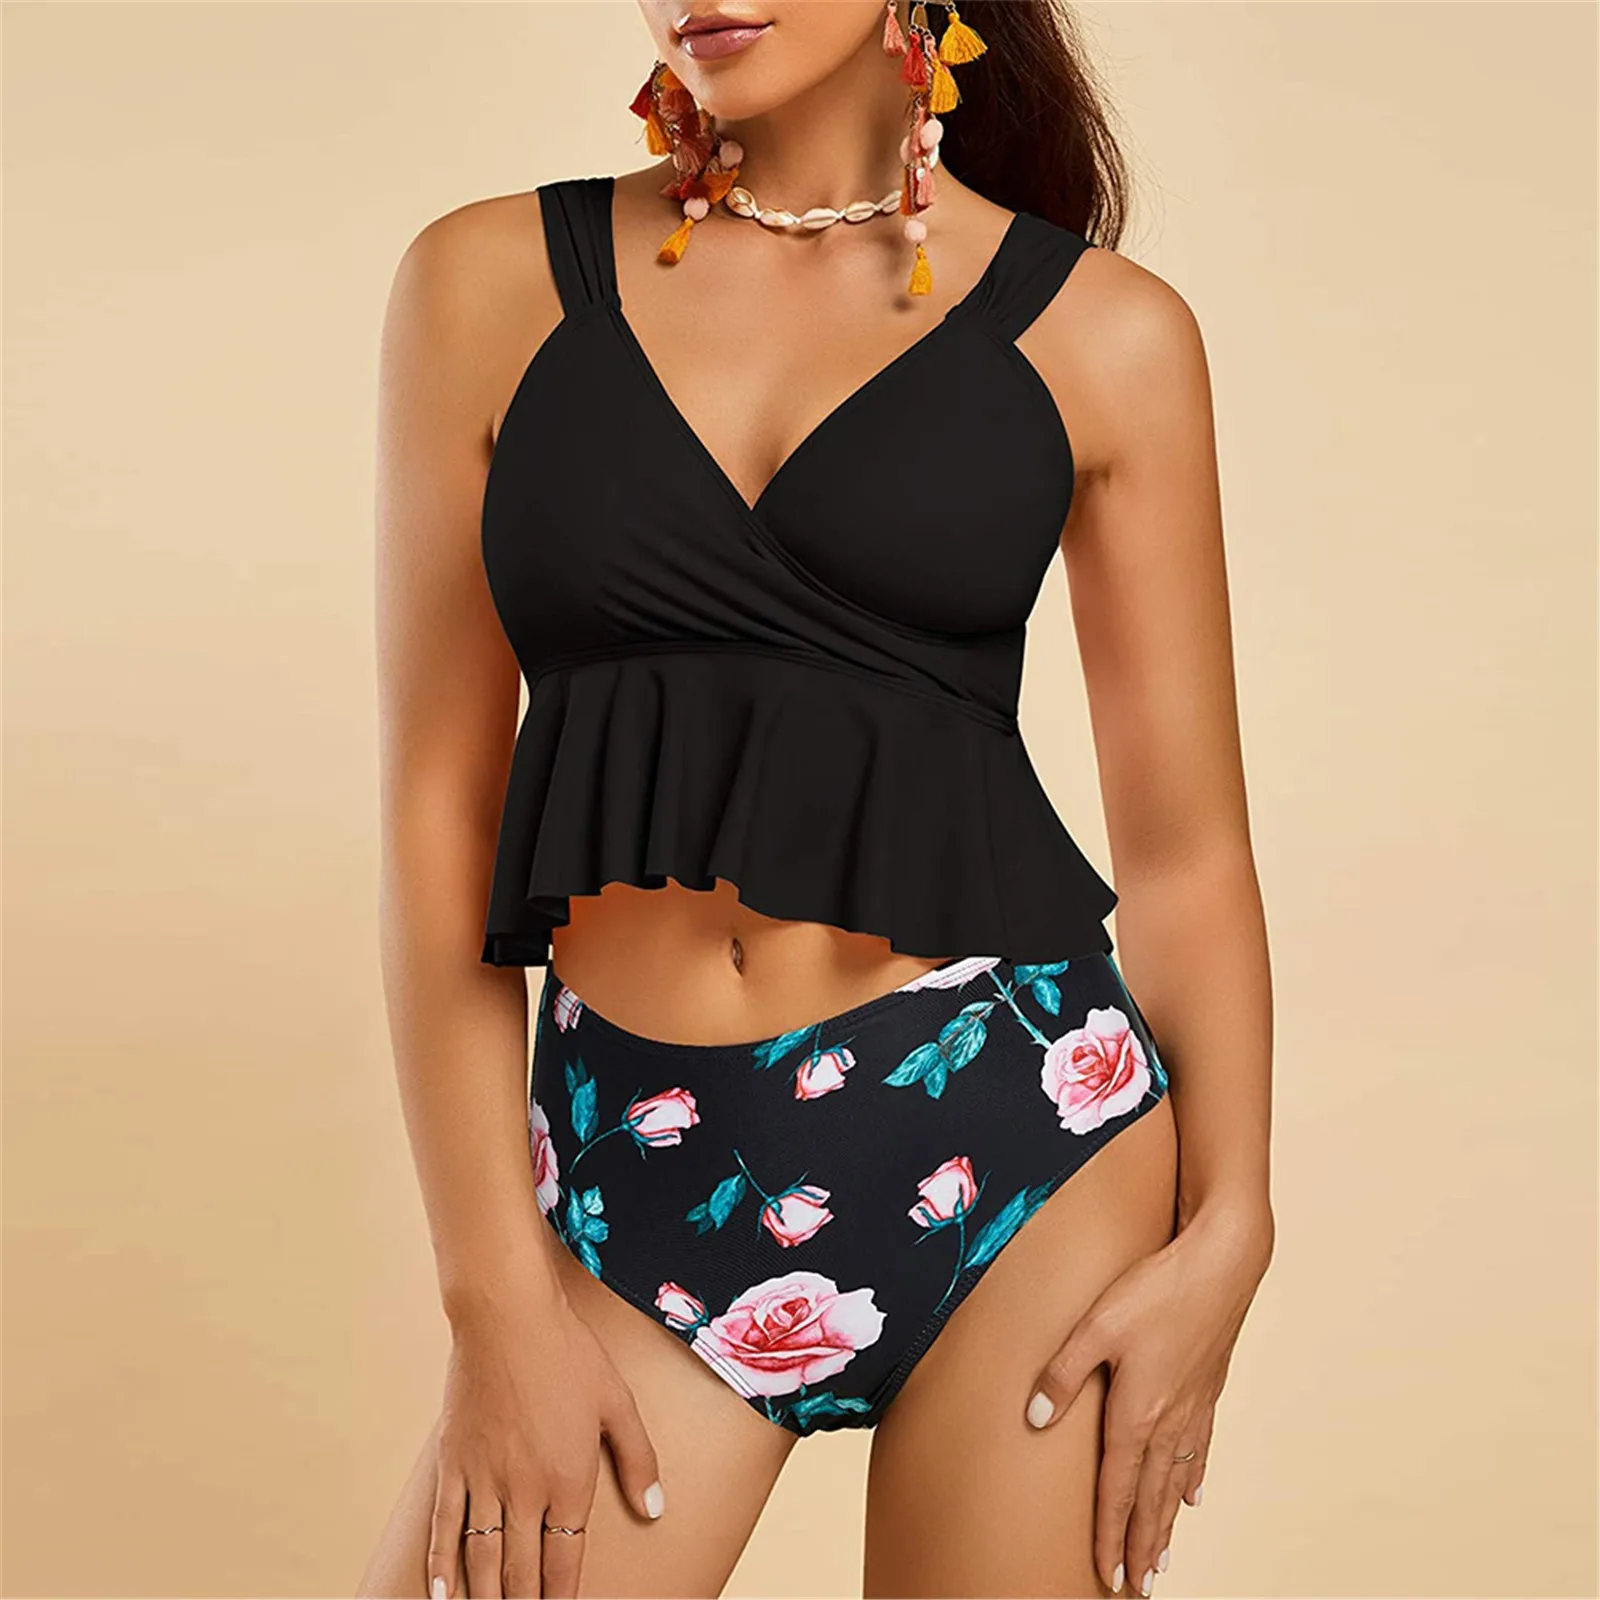 Women V-neck Split High Waist Bikini Ruffle Swimsuit Leaf Print Swimsuit Brazilian Summer Beach Bathing Suit Swim Wear 2pcs Sets cute swimsuits